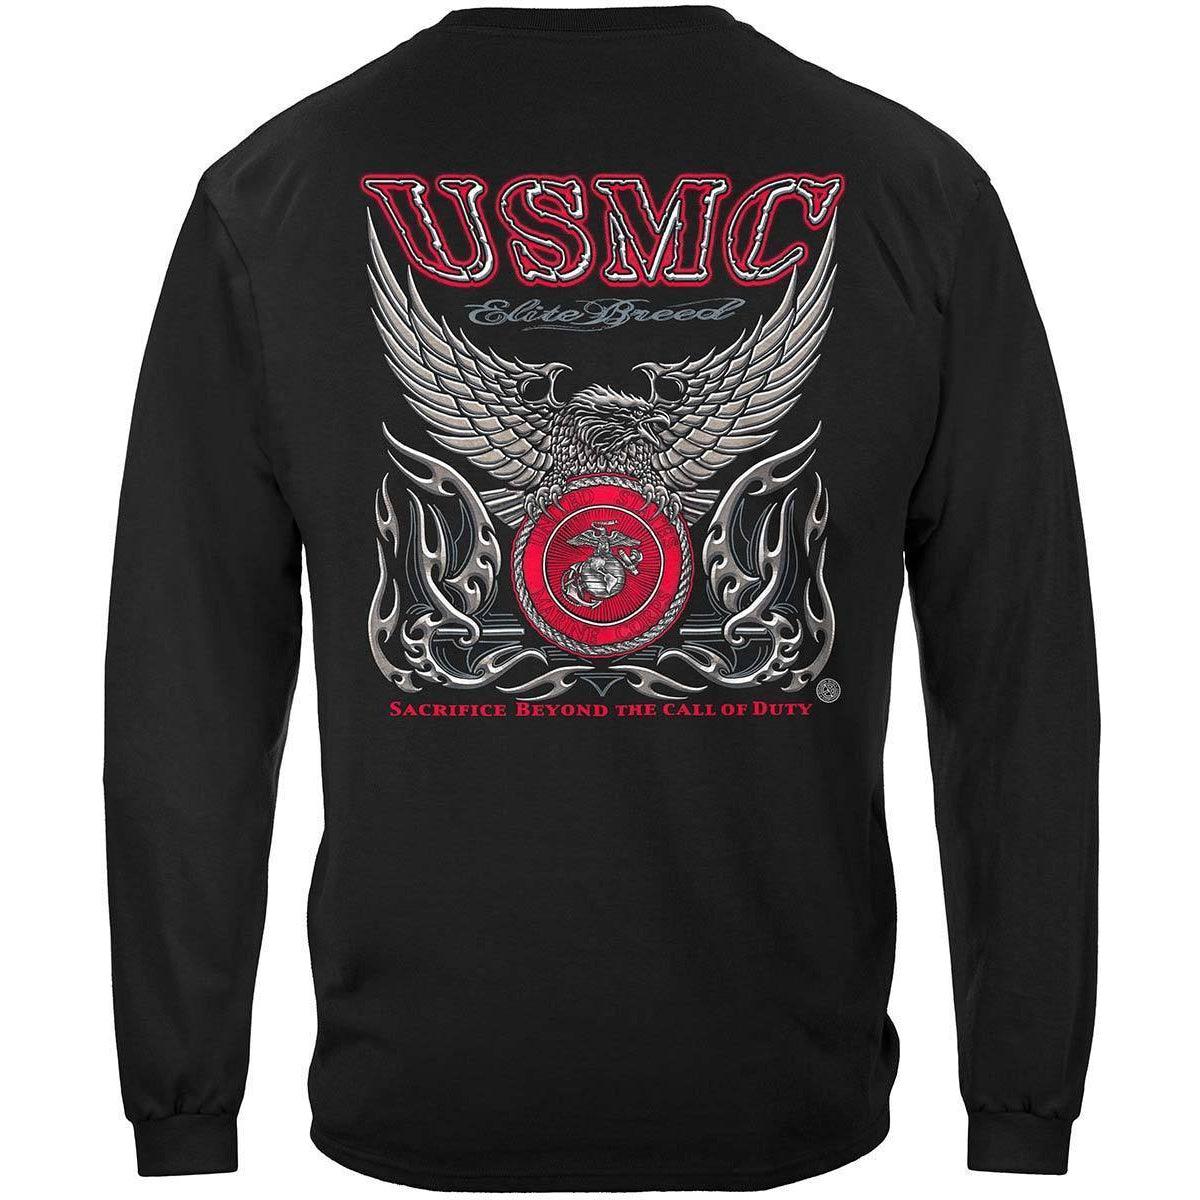 Elite Breed USMC Marine Corps Premium T-Shirt - Military Republic